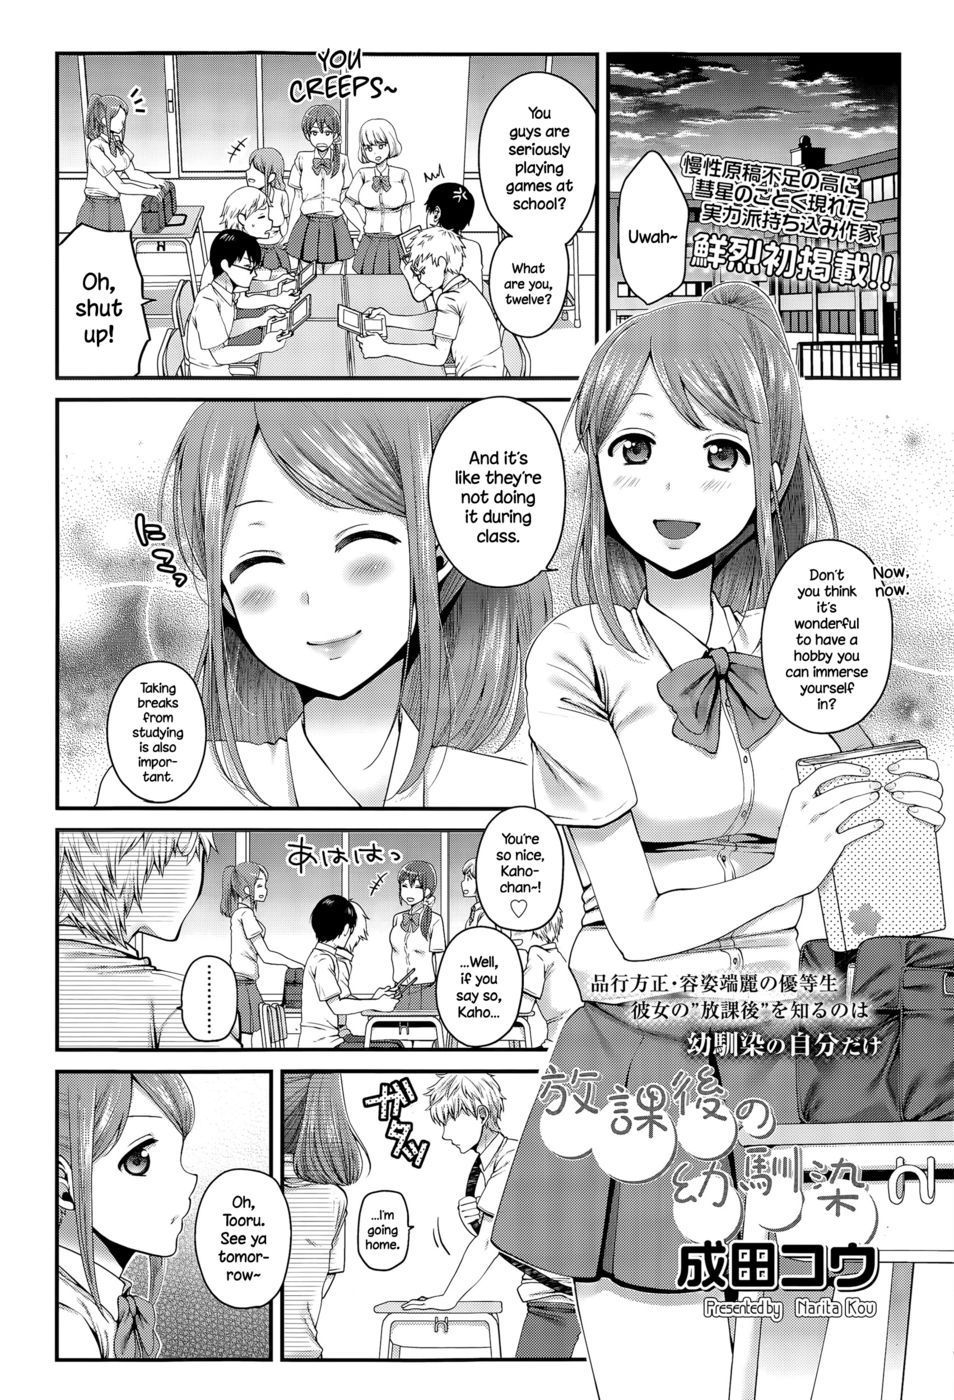 Houkago no Osananajimi 1 | Naughty Funny Hentai Comic Manga Hobby